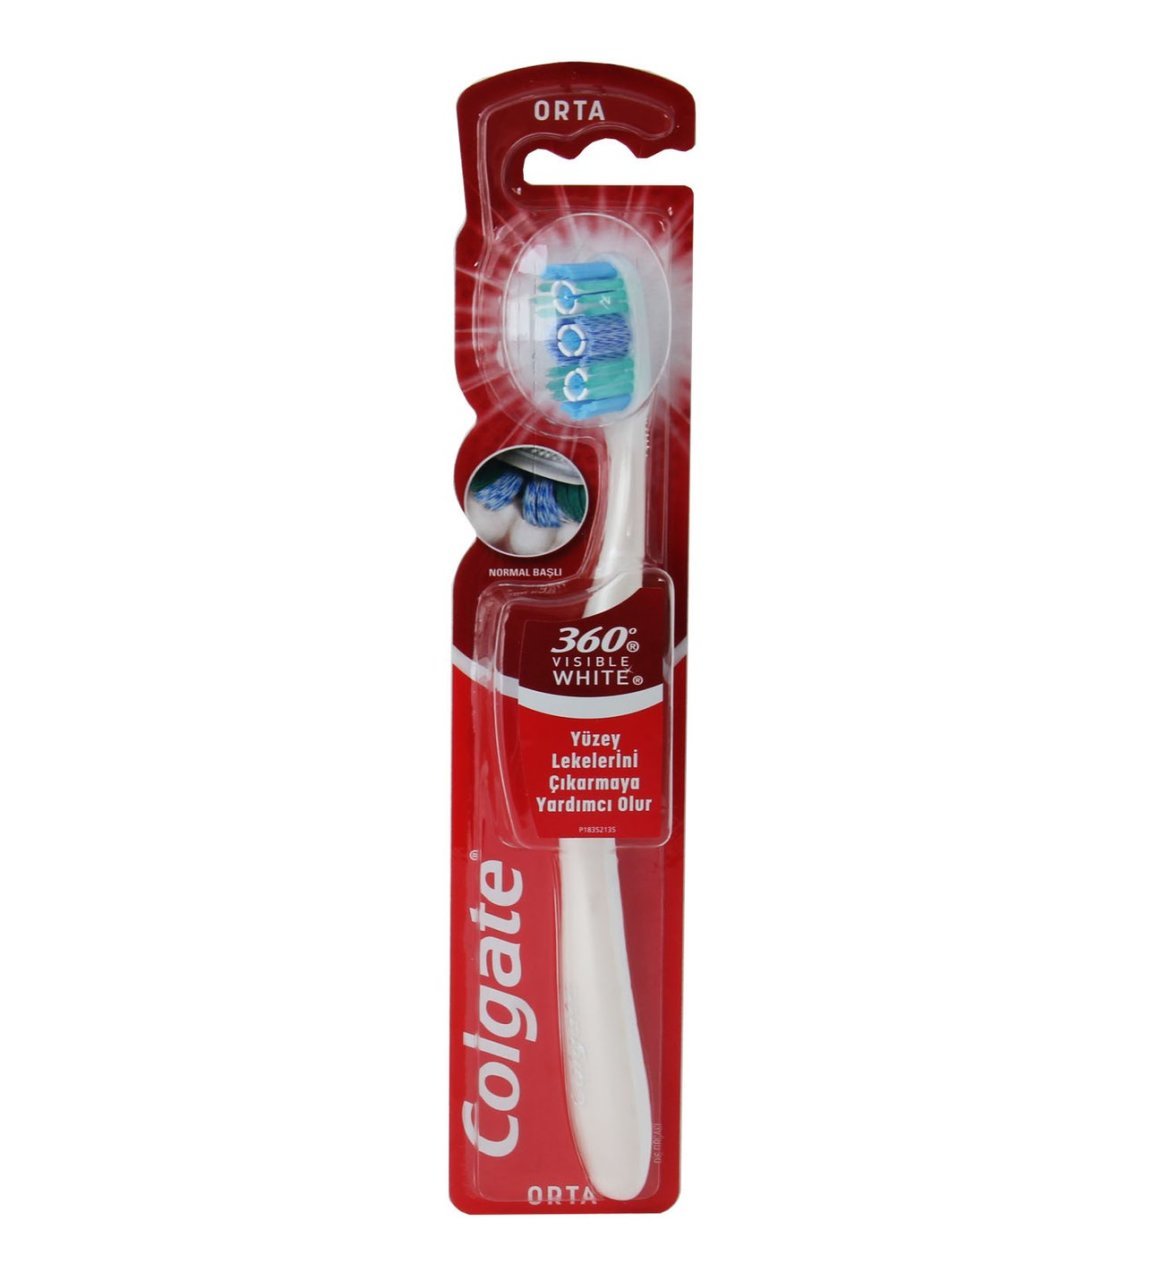 Colgate 360 Visible White Orta Diş Fırçası